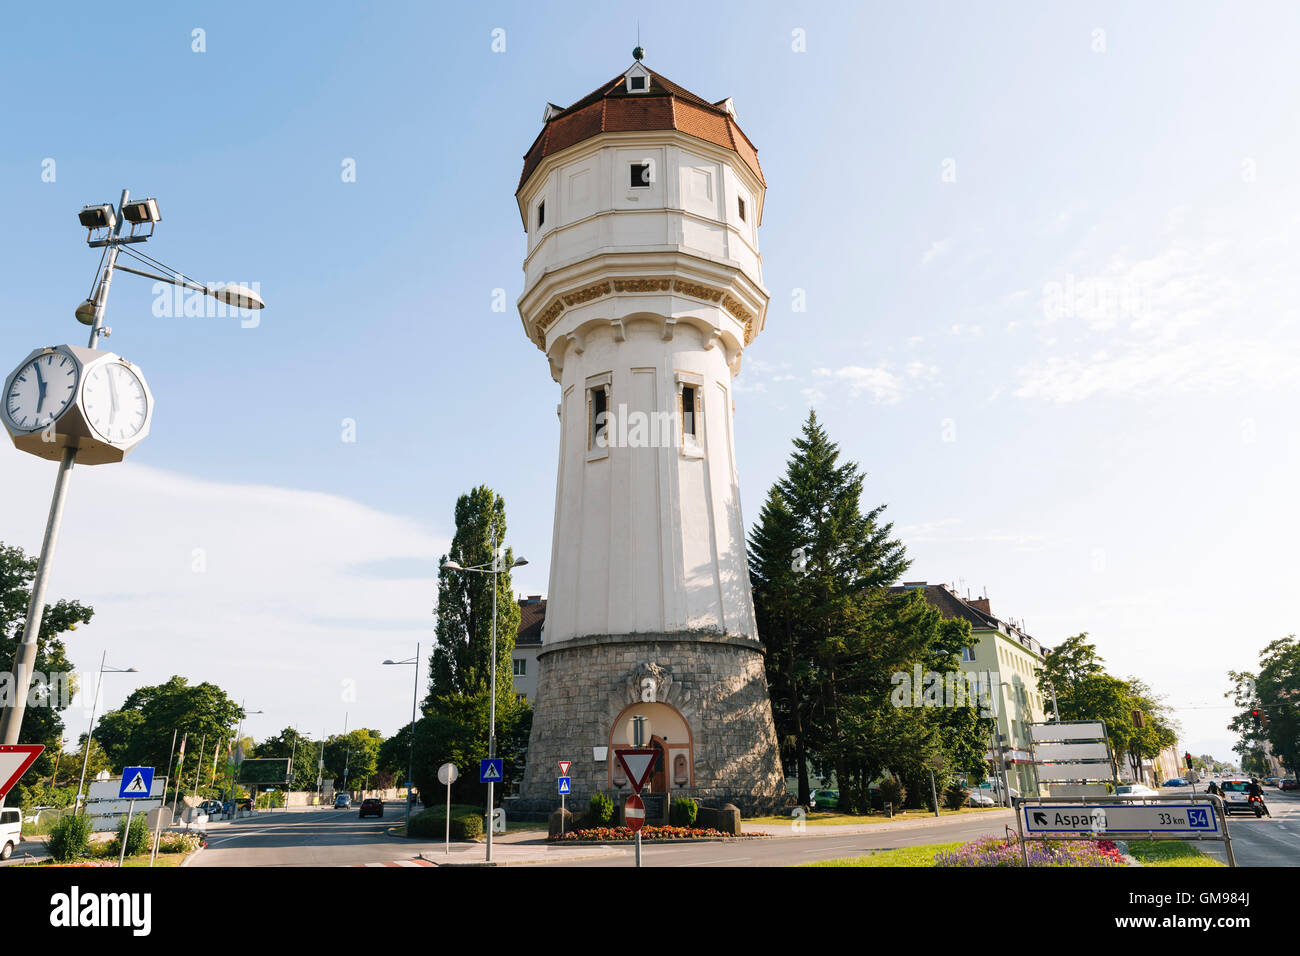 Austria, Wiener Neustadt, water tower at Suedtiroler Platz Stock Photo